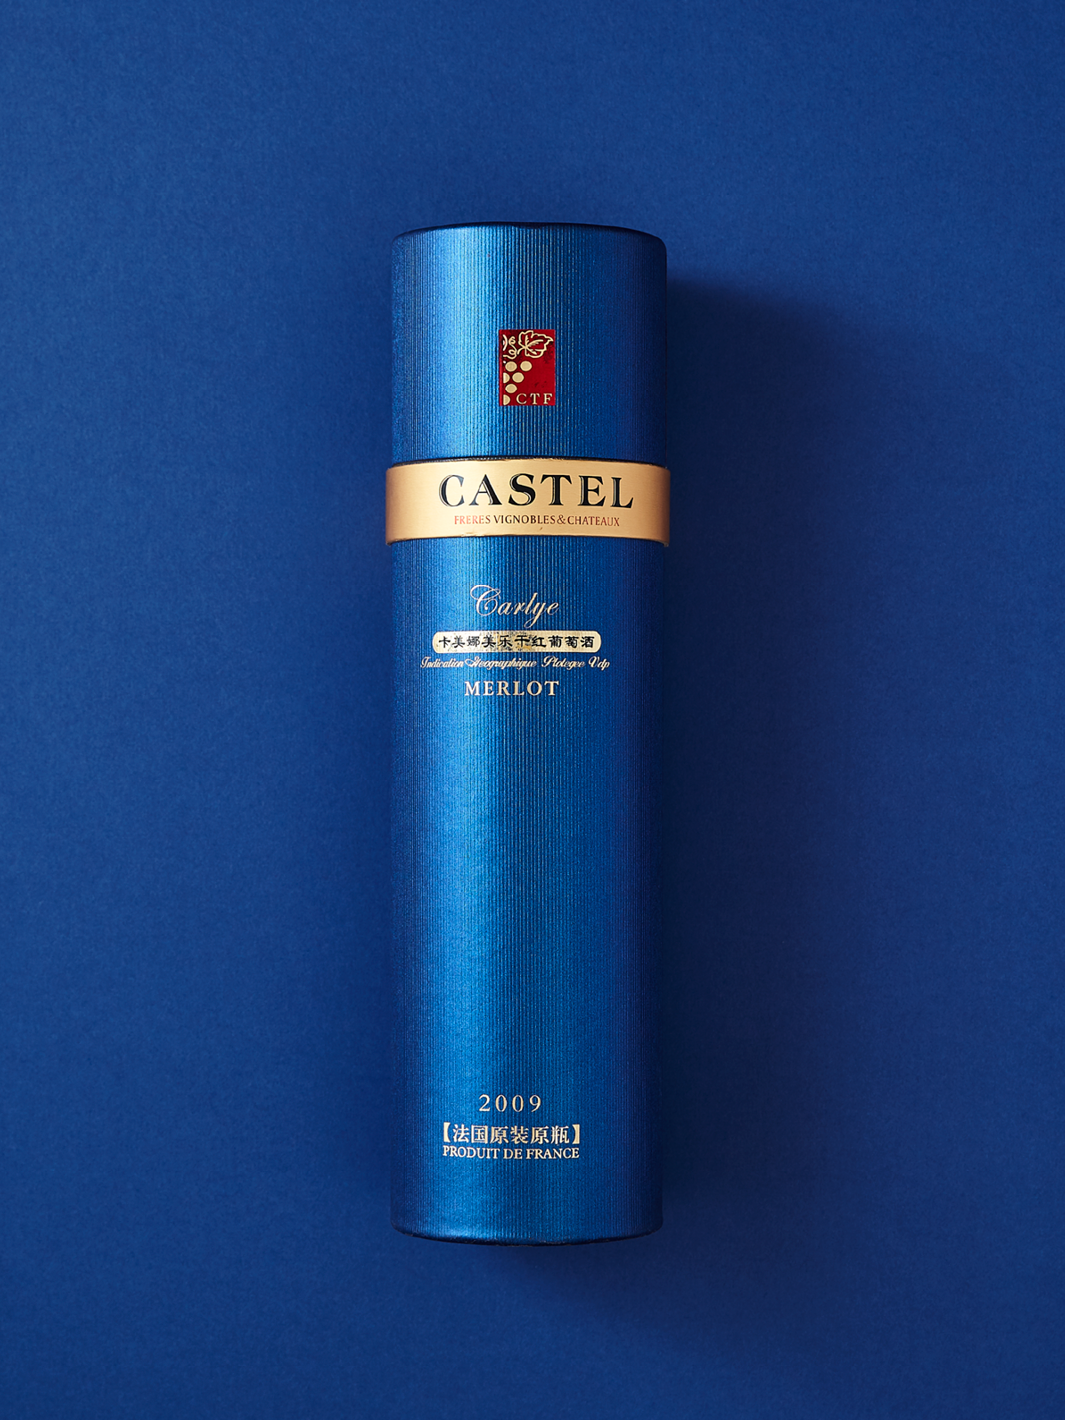 Emballage en tube de carton bleu pour les boissons Castel.